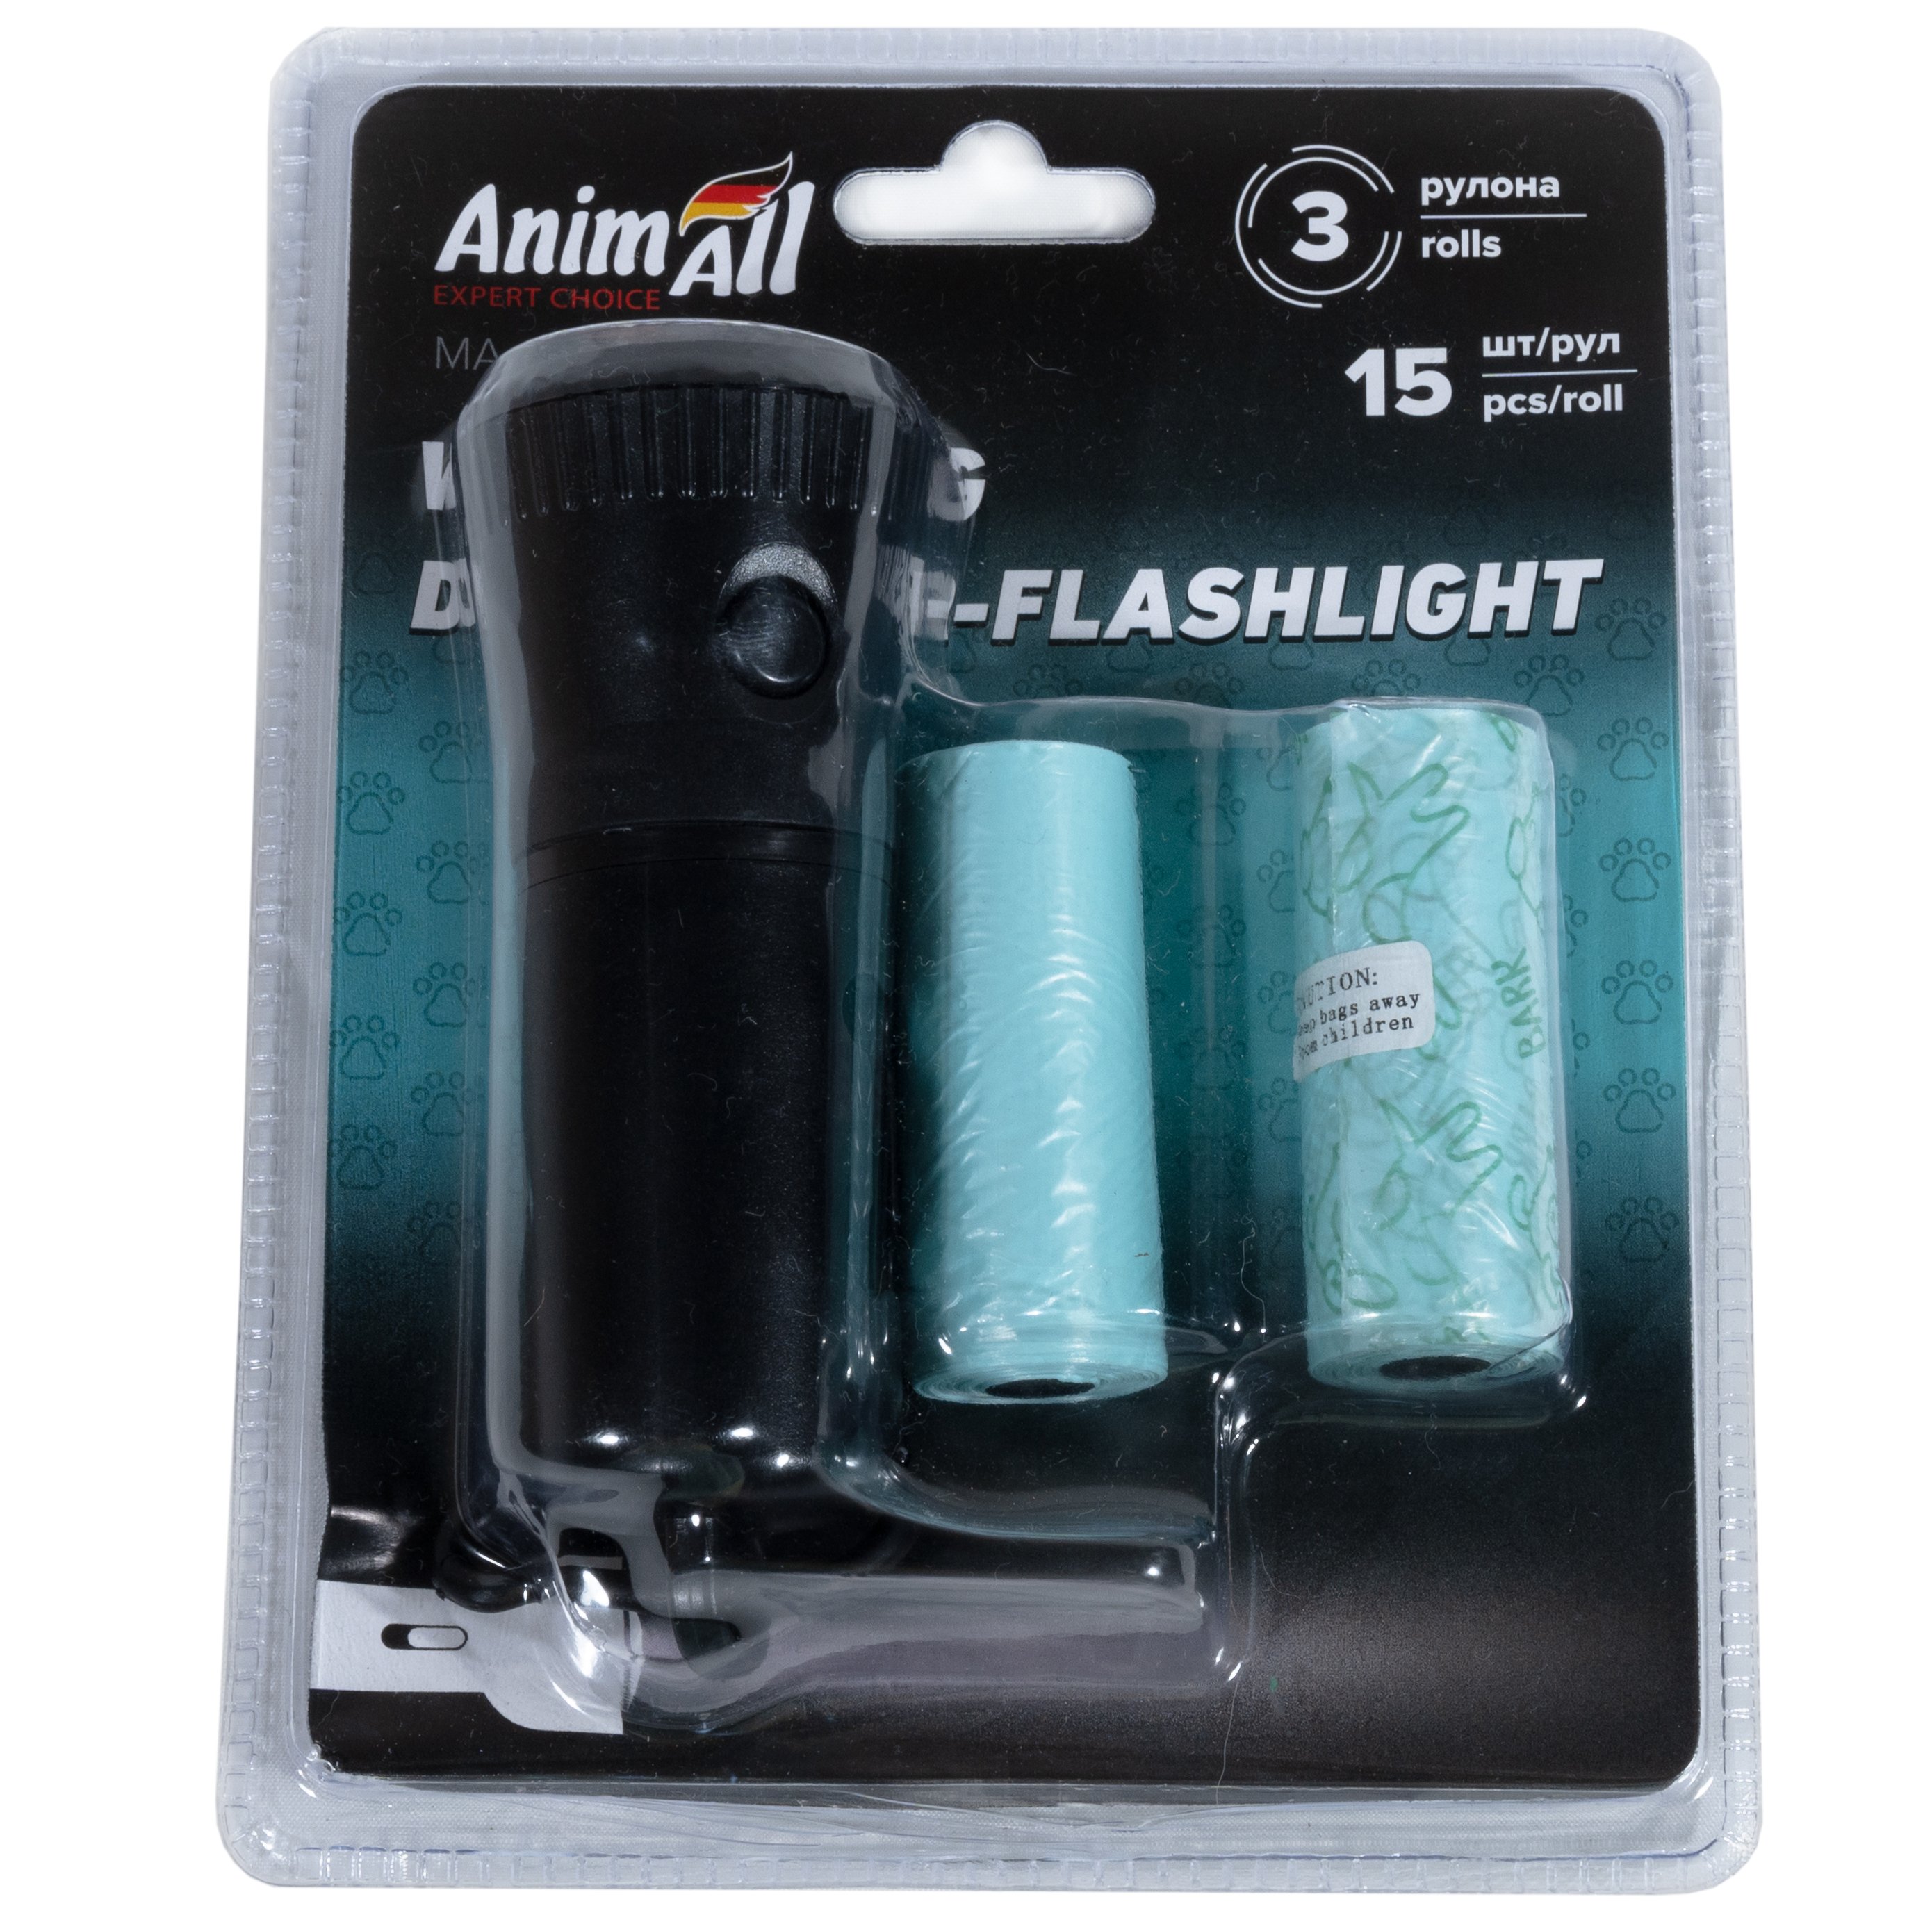 Диспенсер-ліхтарик AnimAll зі змінними пакетами 3 рулона по 15 шт. чорний - фото 3